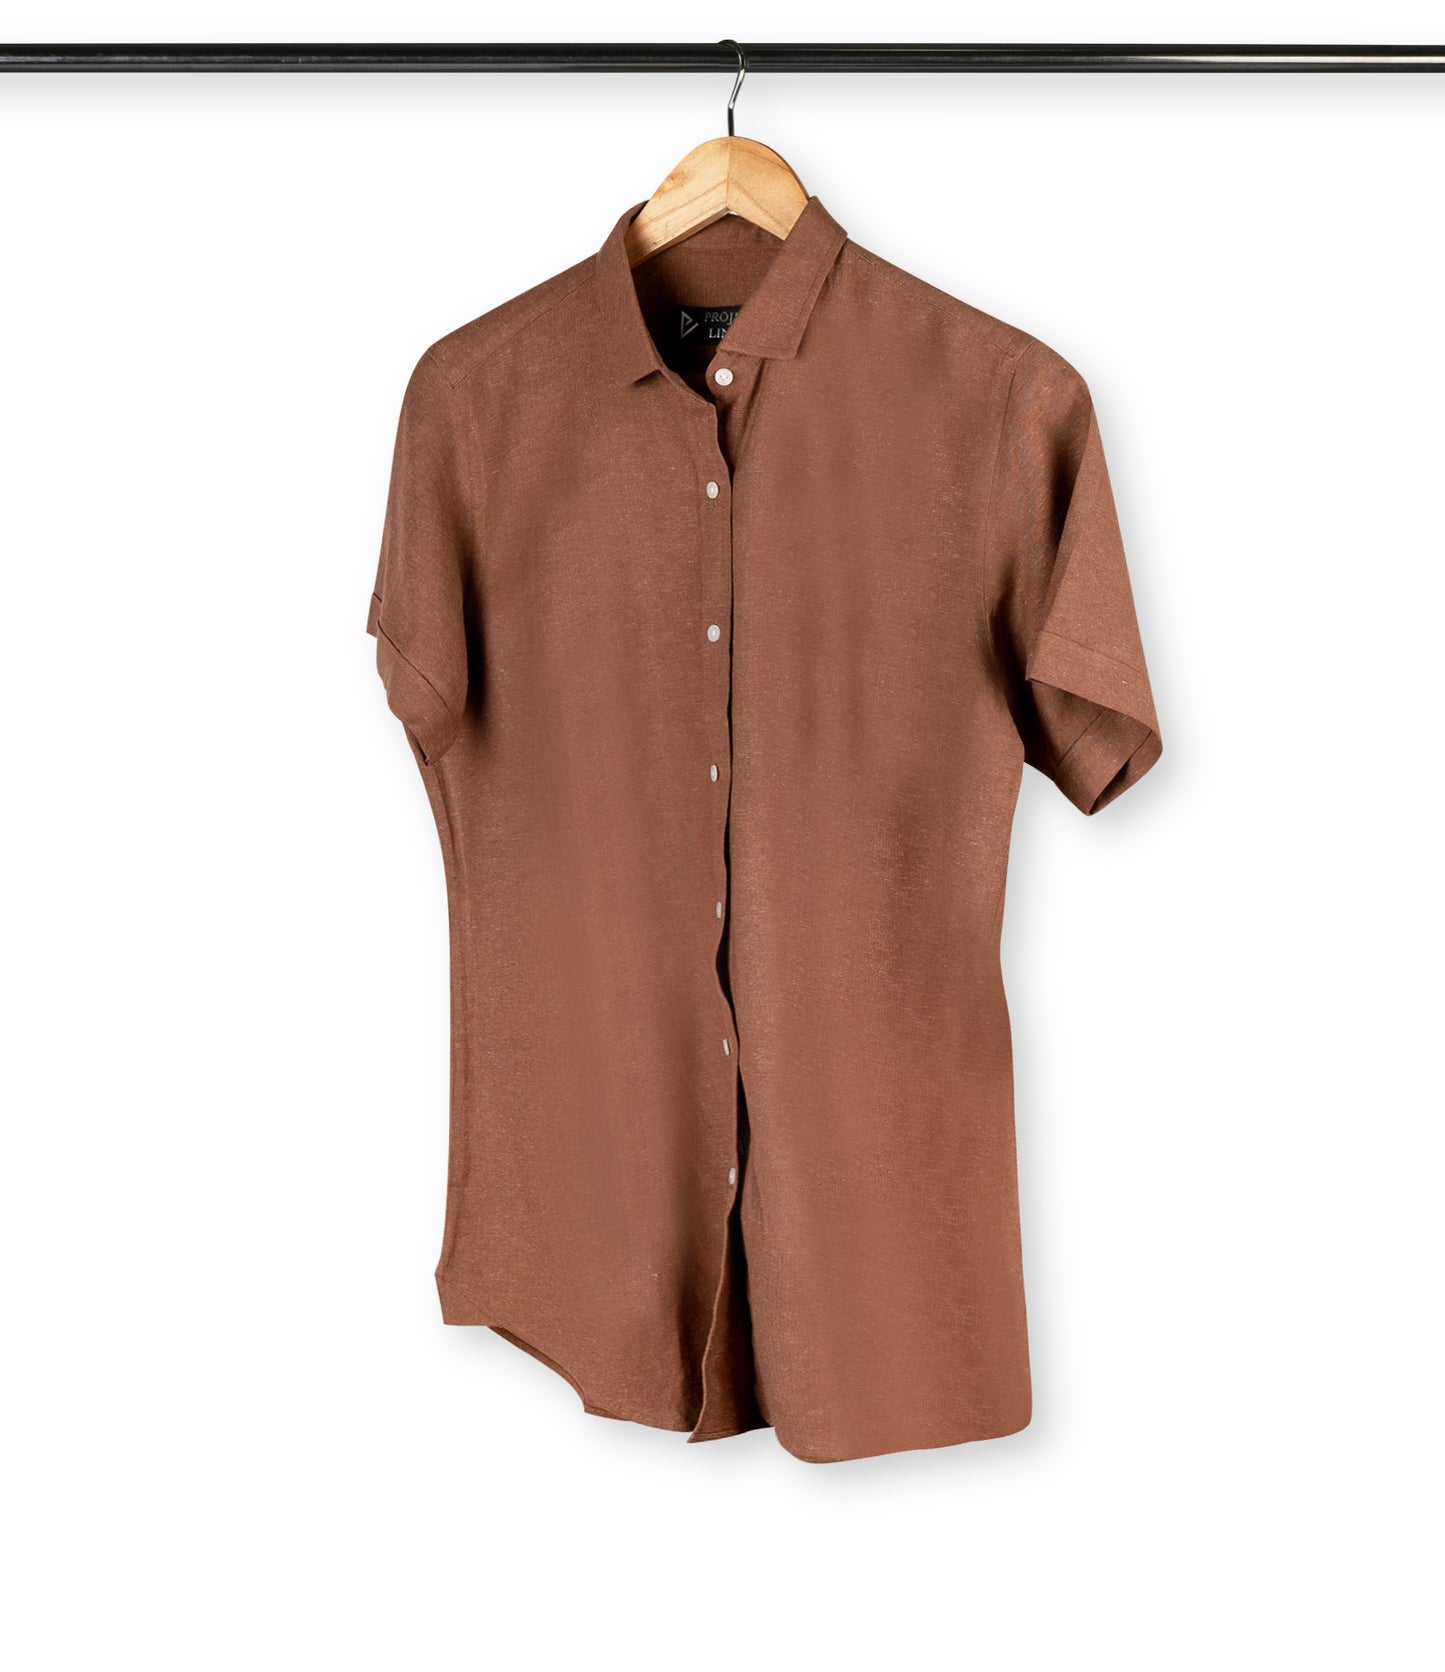 Copper Linen Shirt - Her's